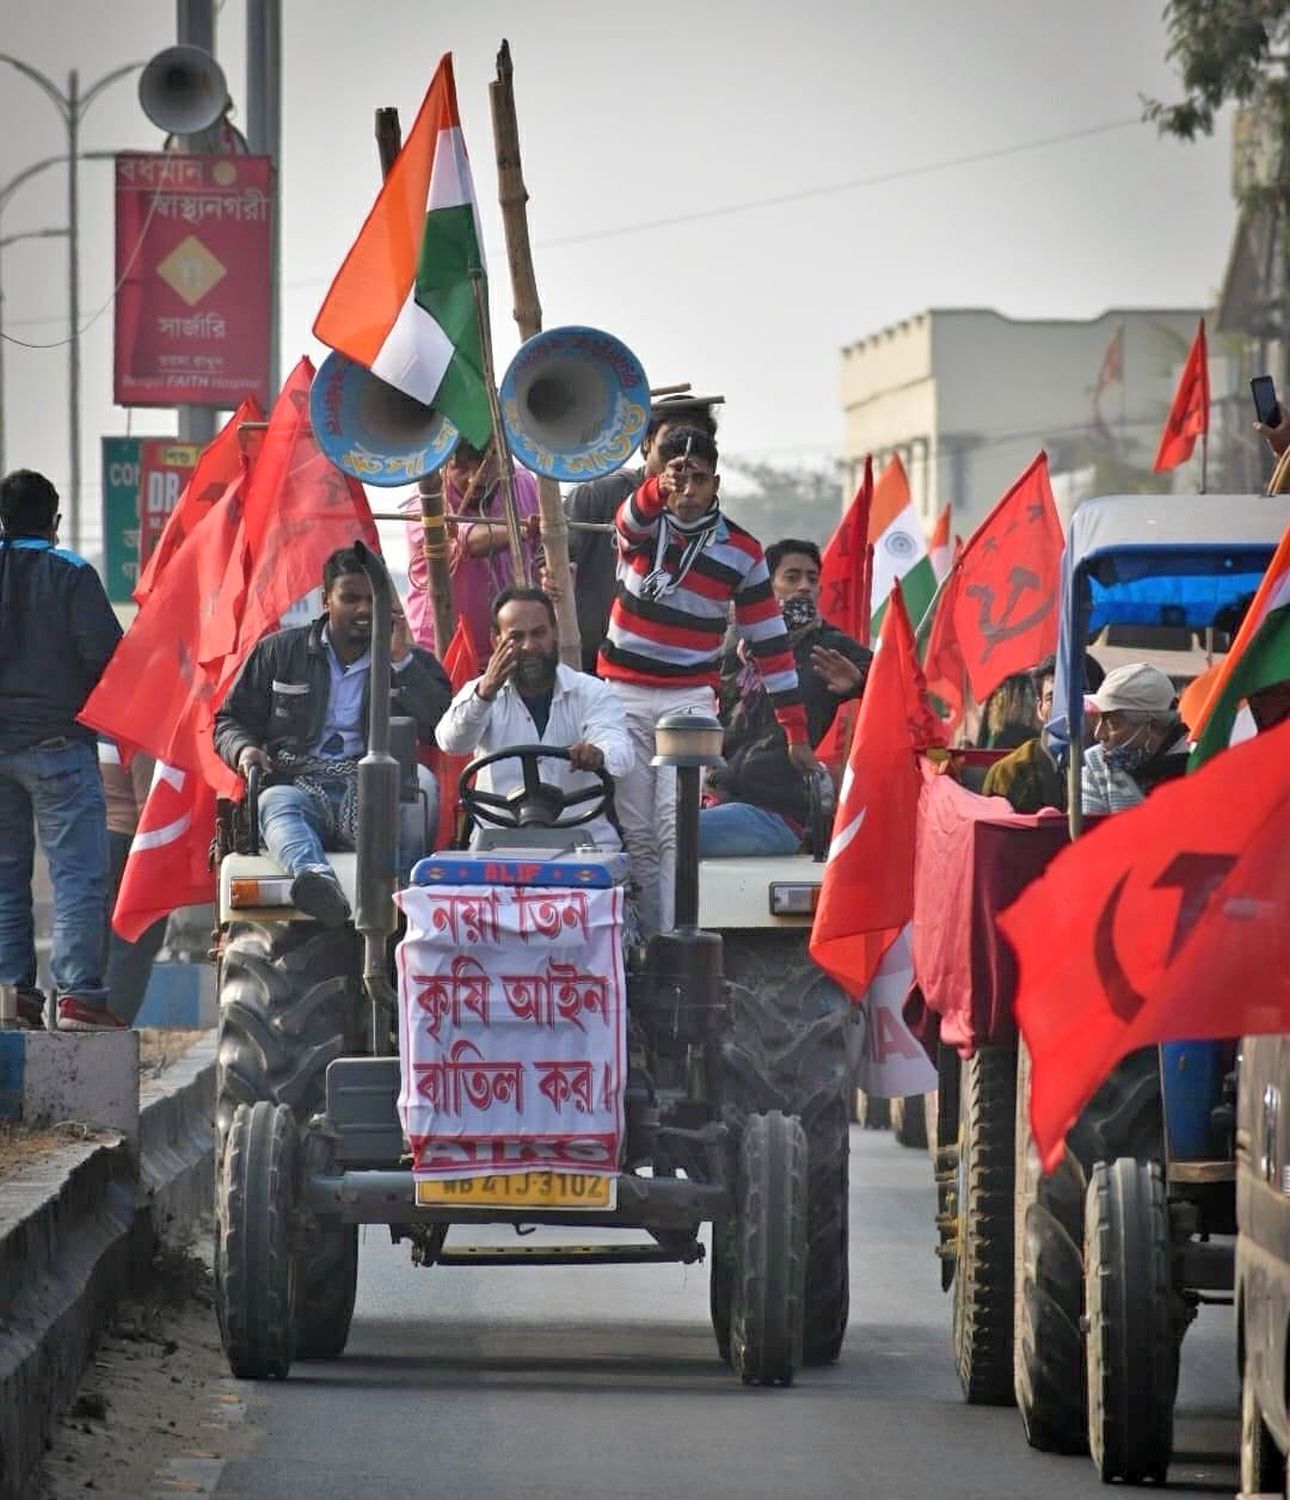 221301 Indien - Indien in Aufruhr - Indien, Streik, Widerstand - Internationales